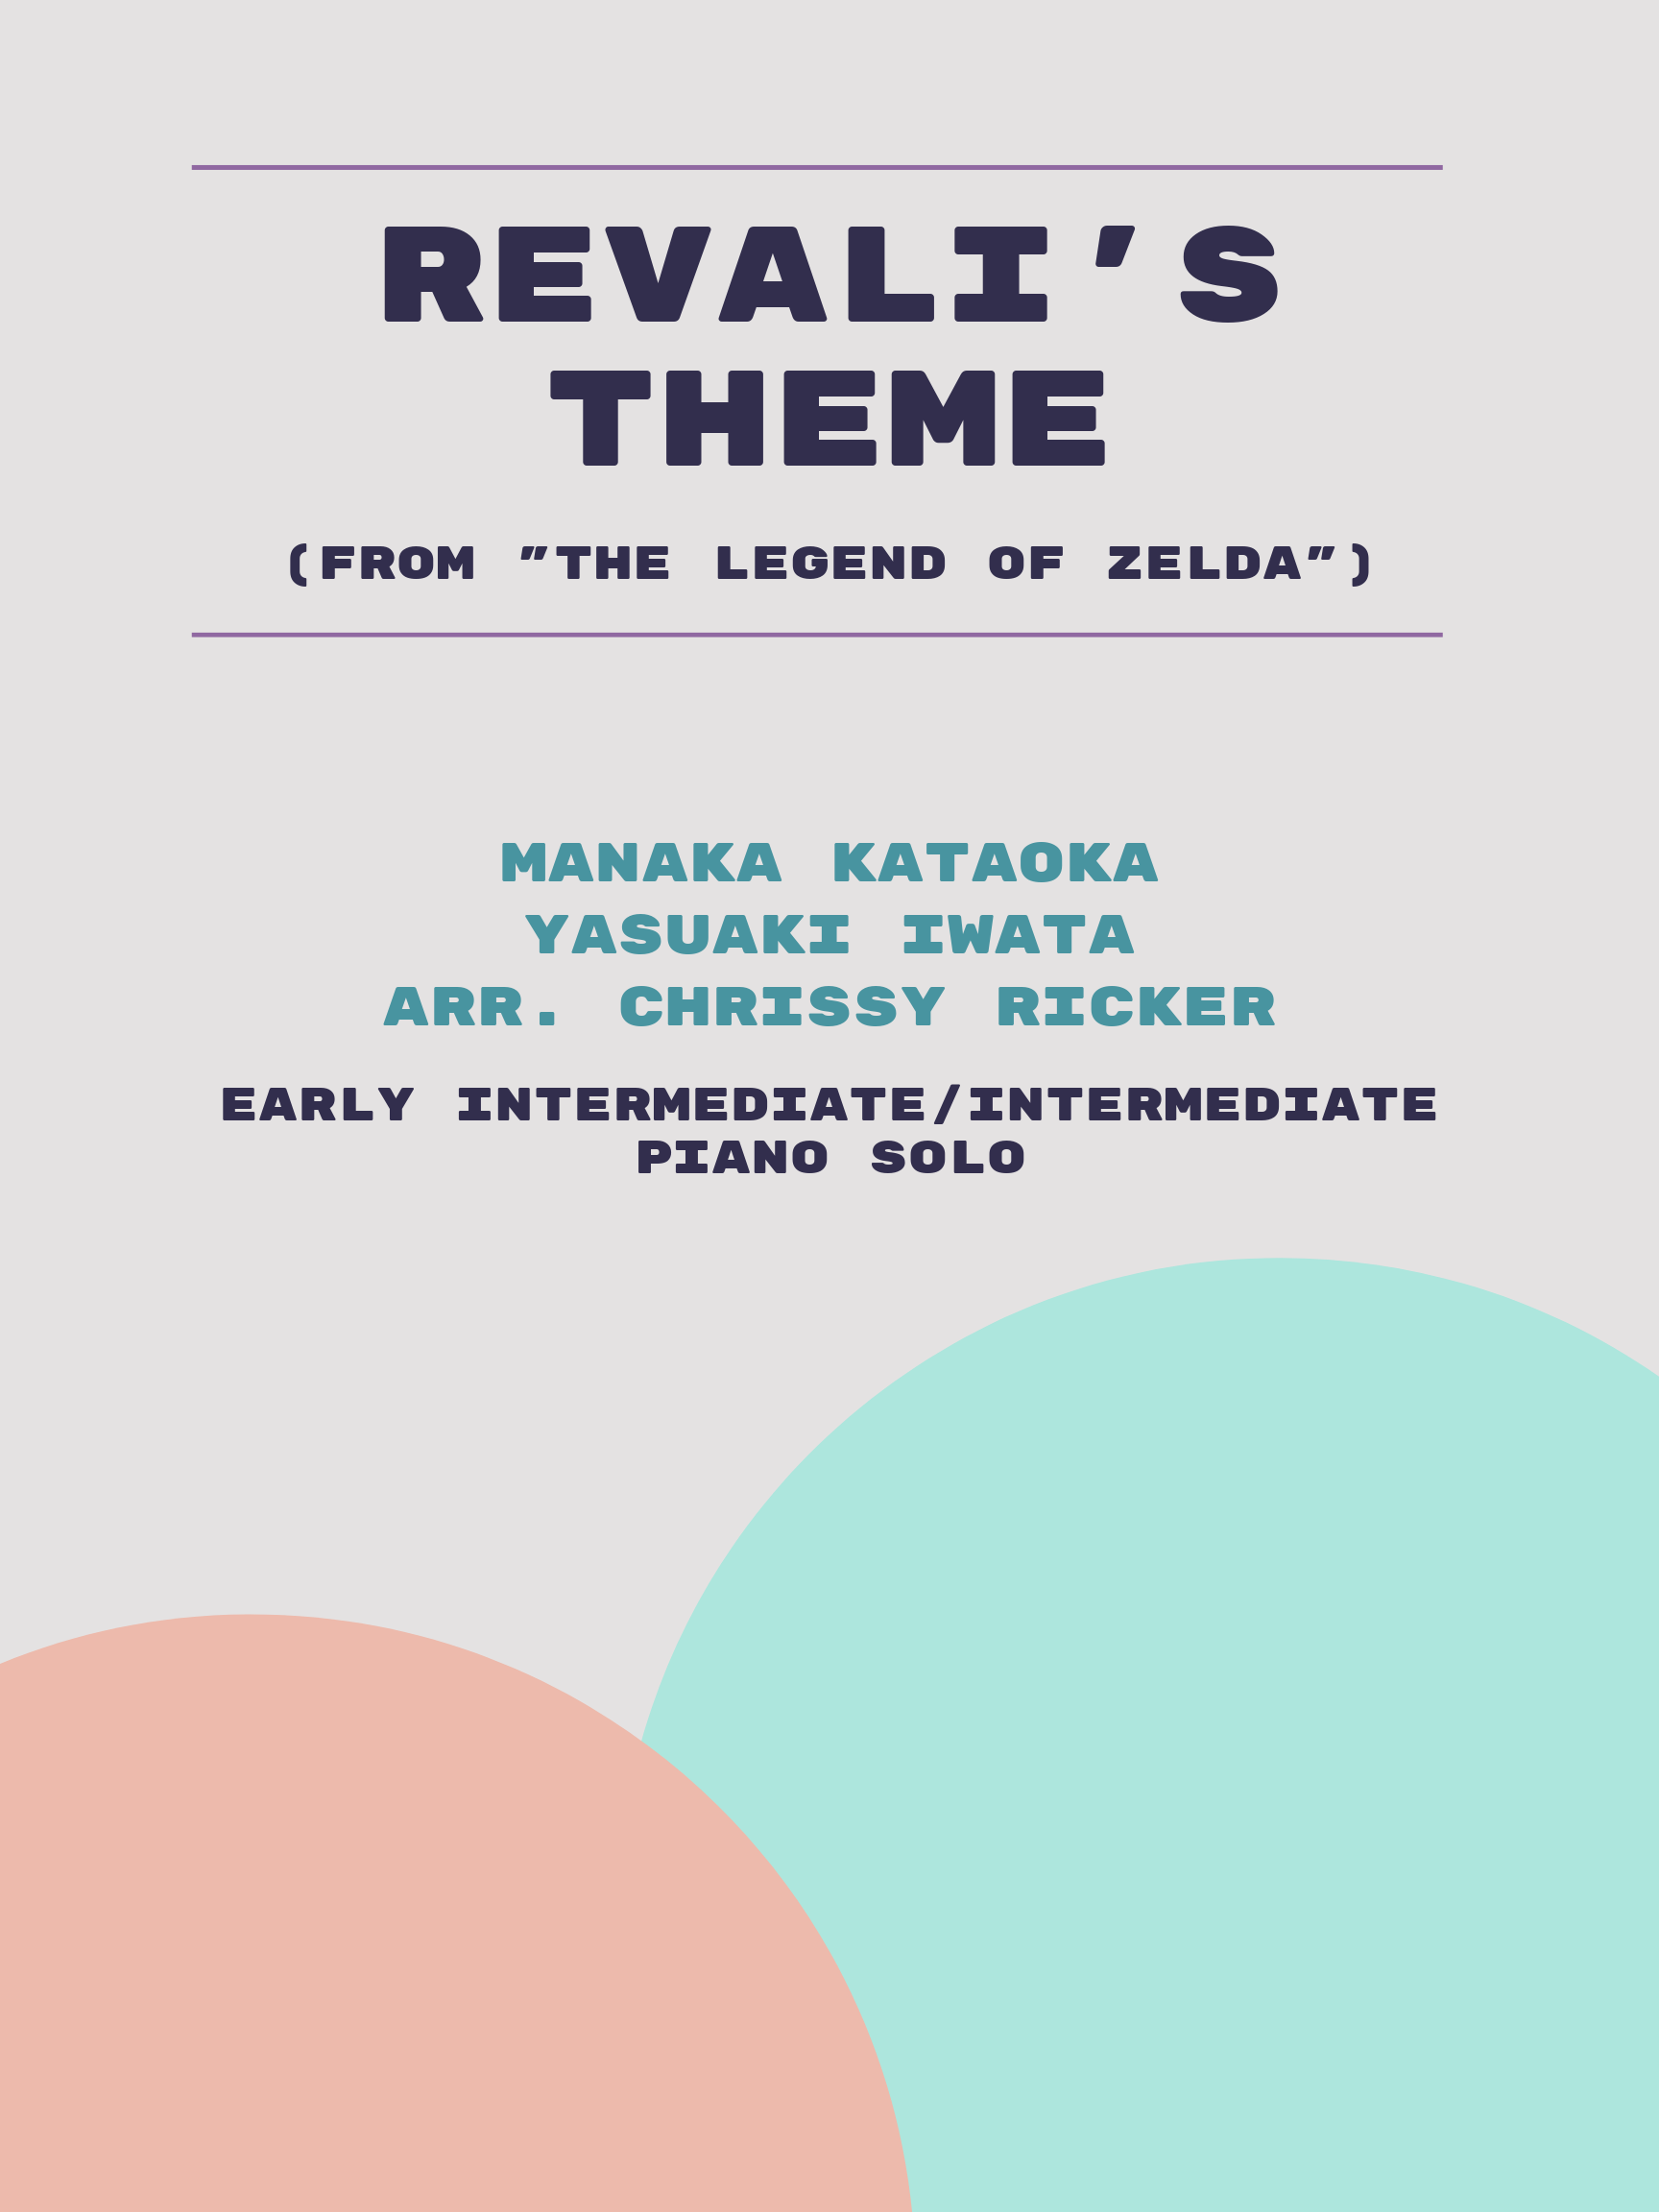 Revali's Theme Sample Page